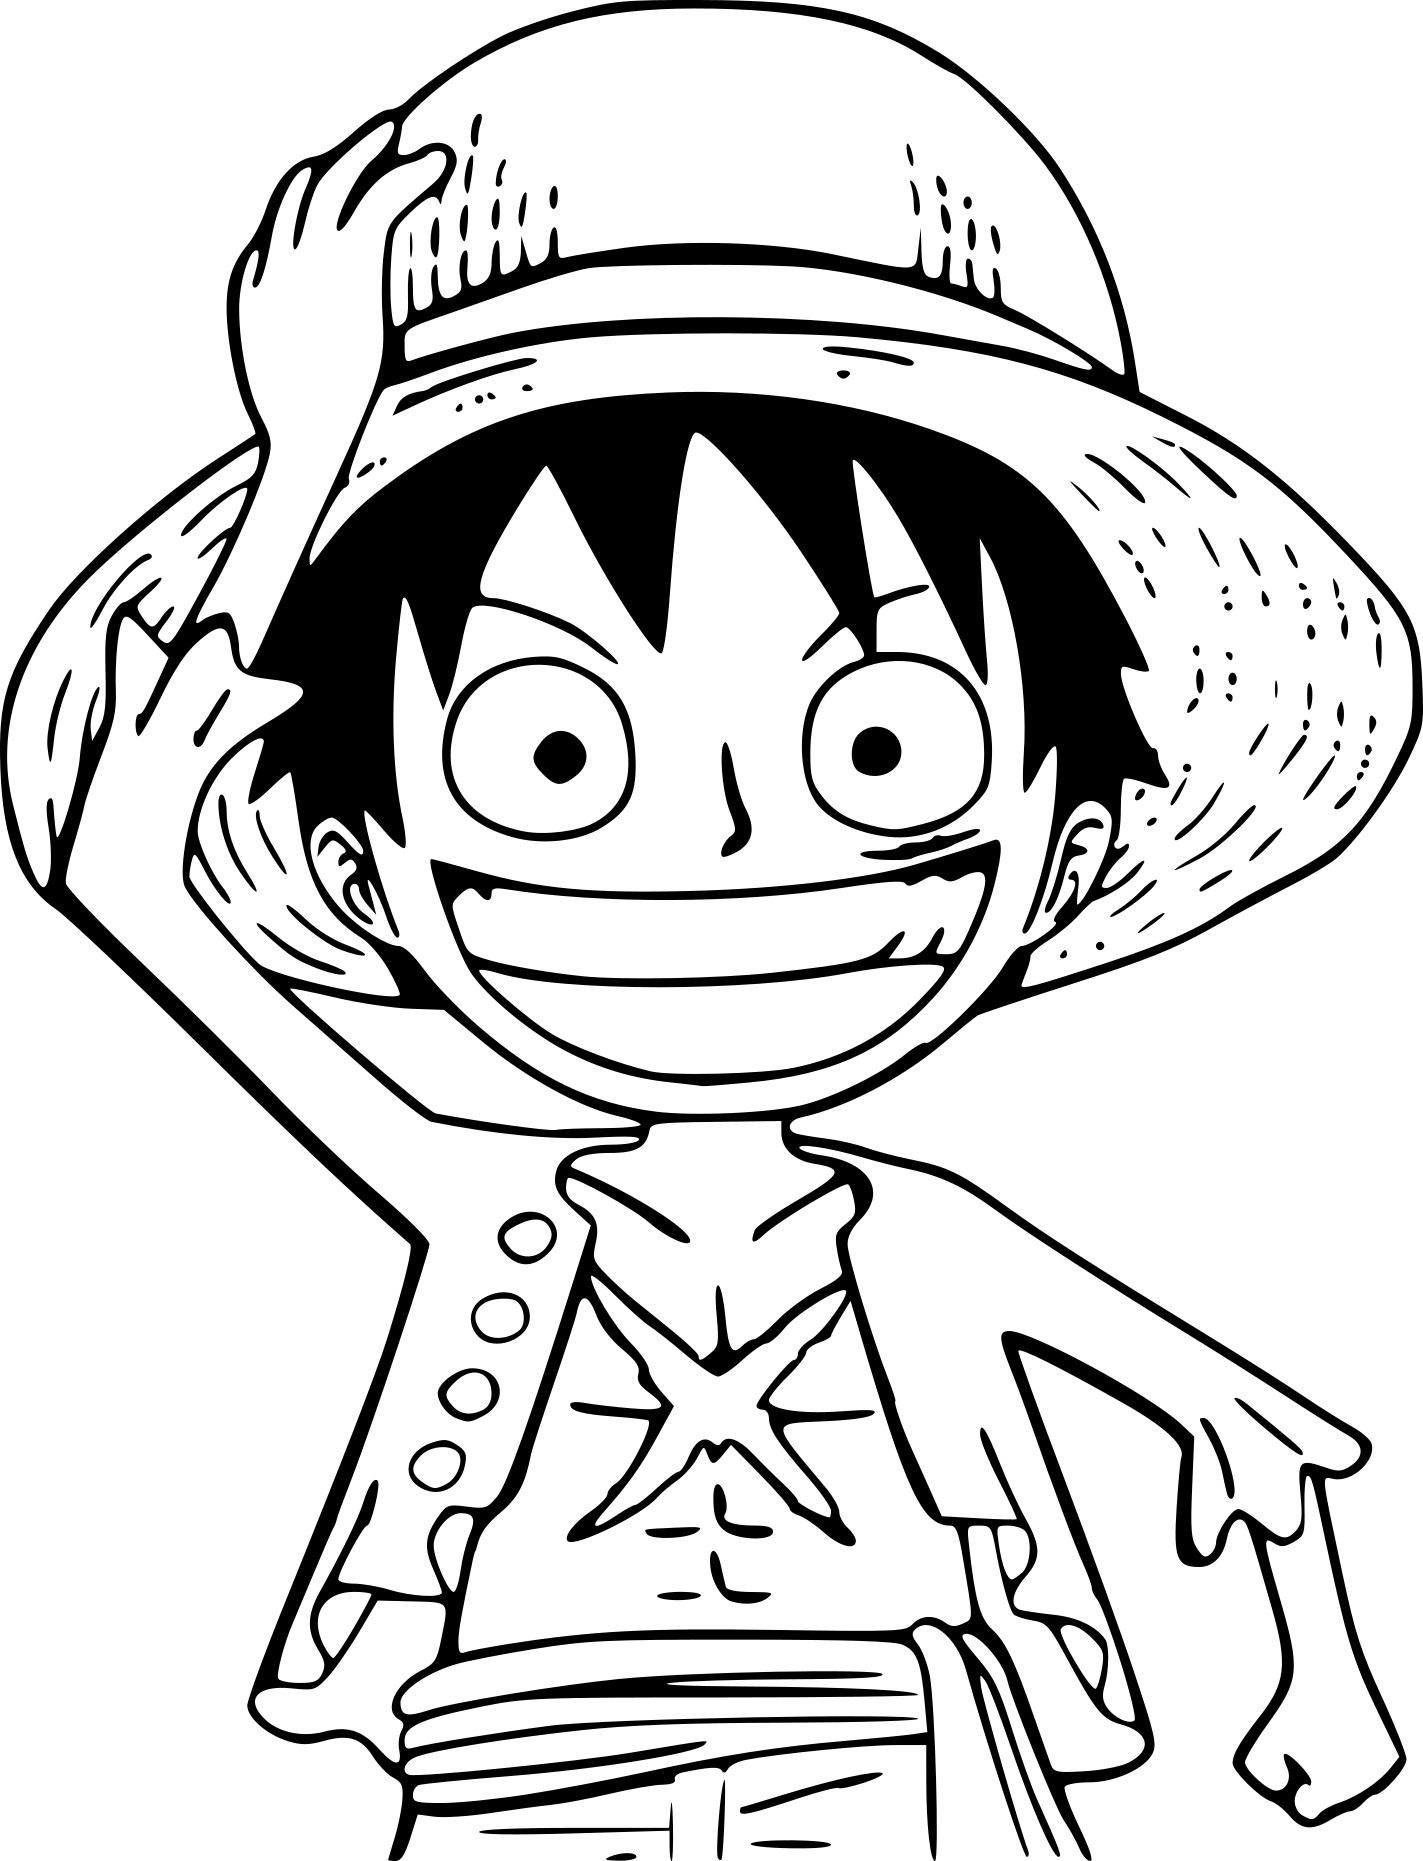 Coloriage Petit One Piece À Imprimer avec Dessin A Imprimer